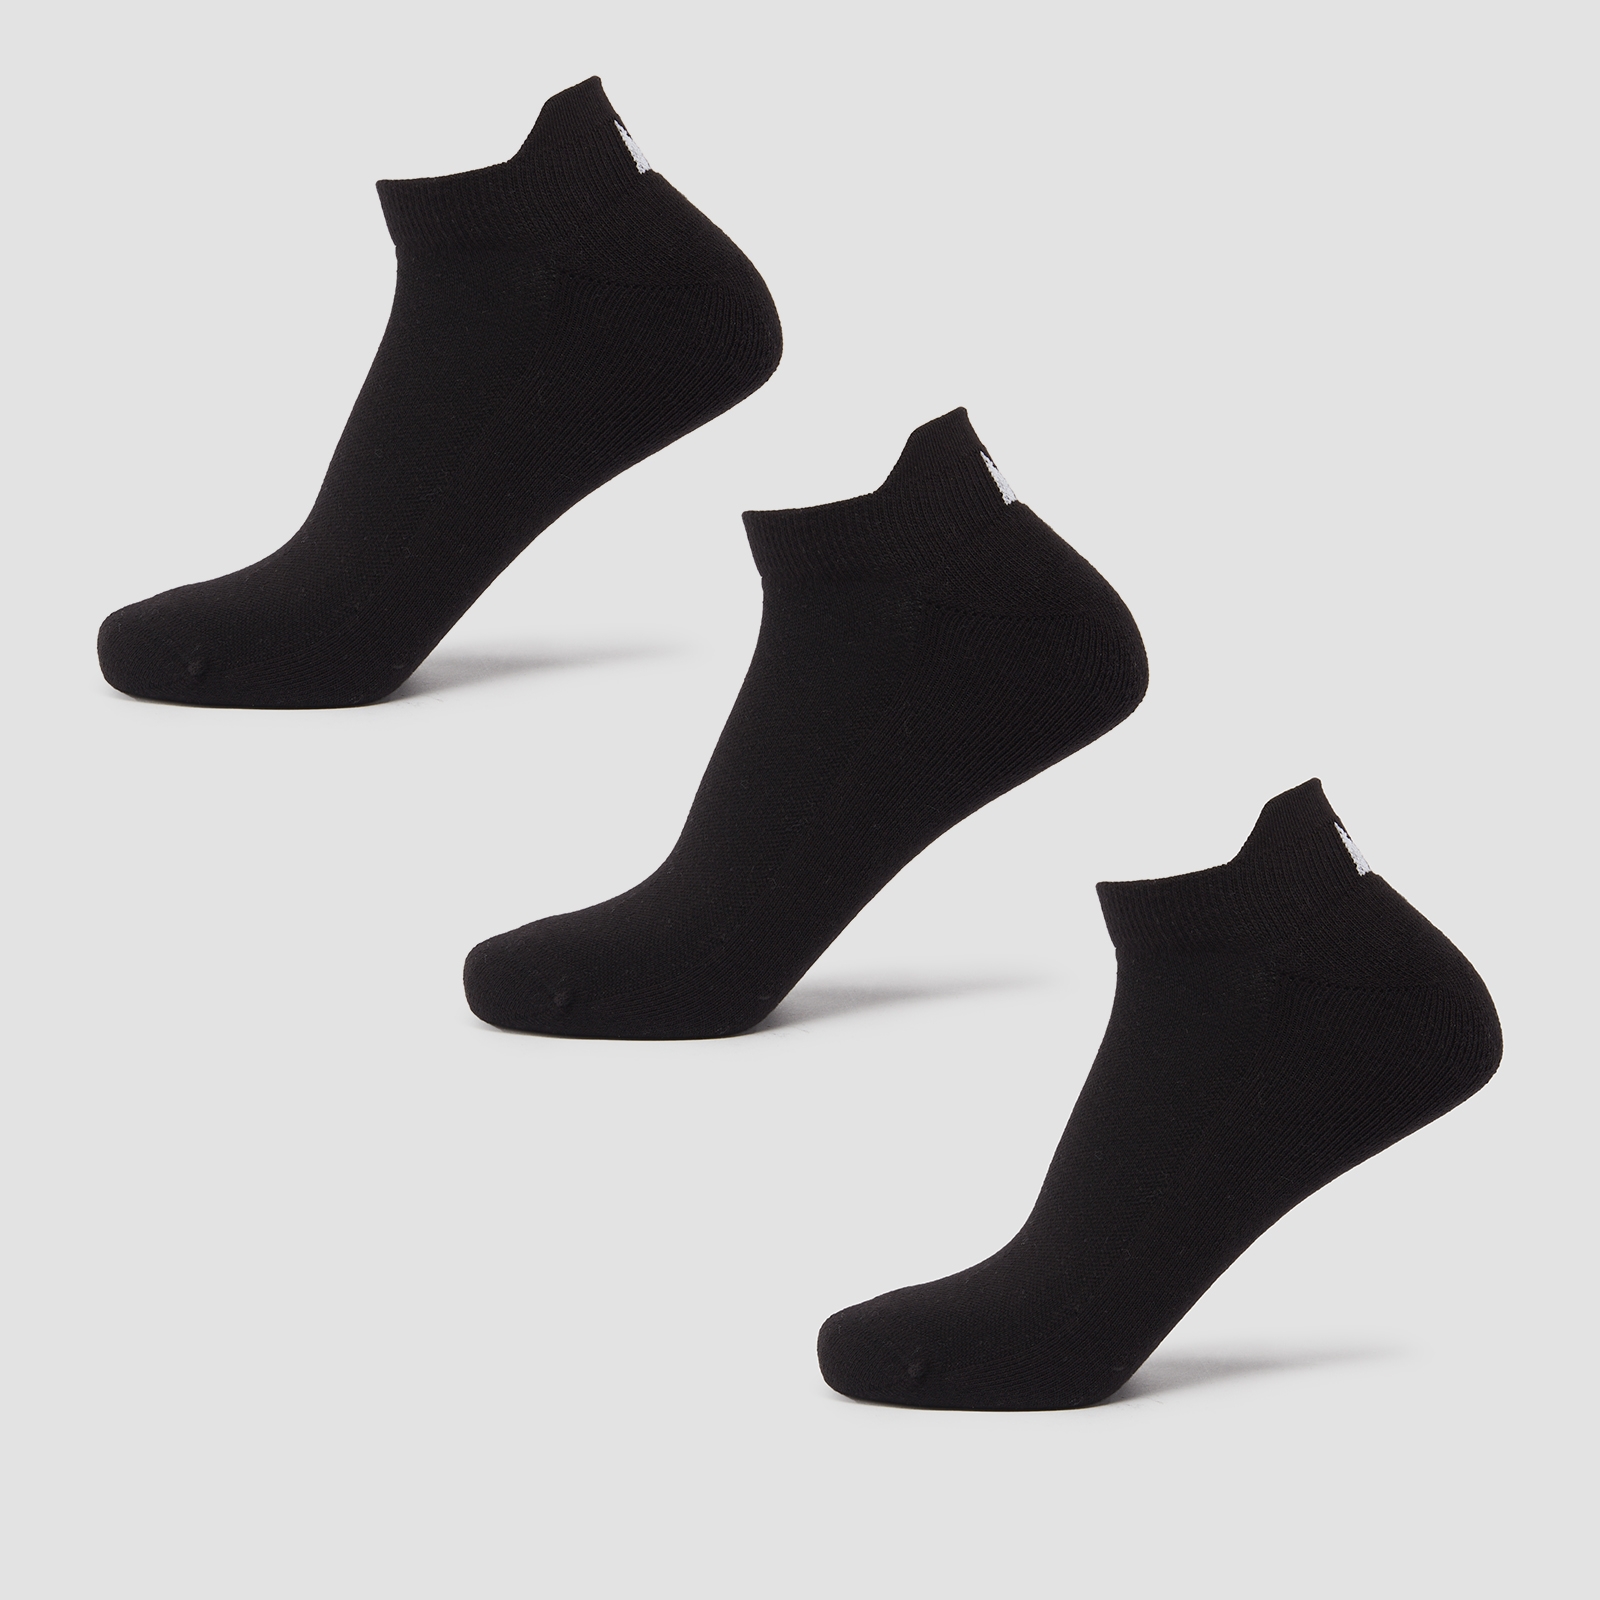 Chaussettes d’entraînement unisexes MP (lot de 3 paires) – Noir - UK 2-5